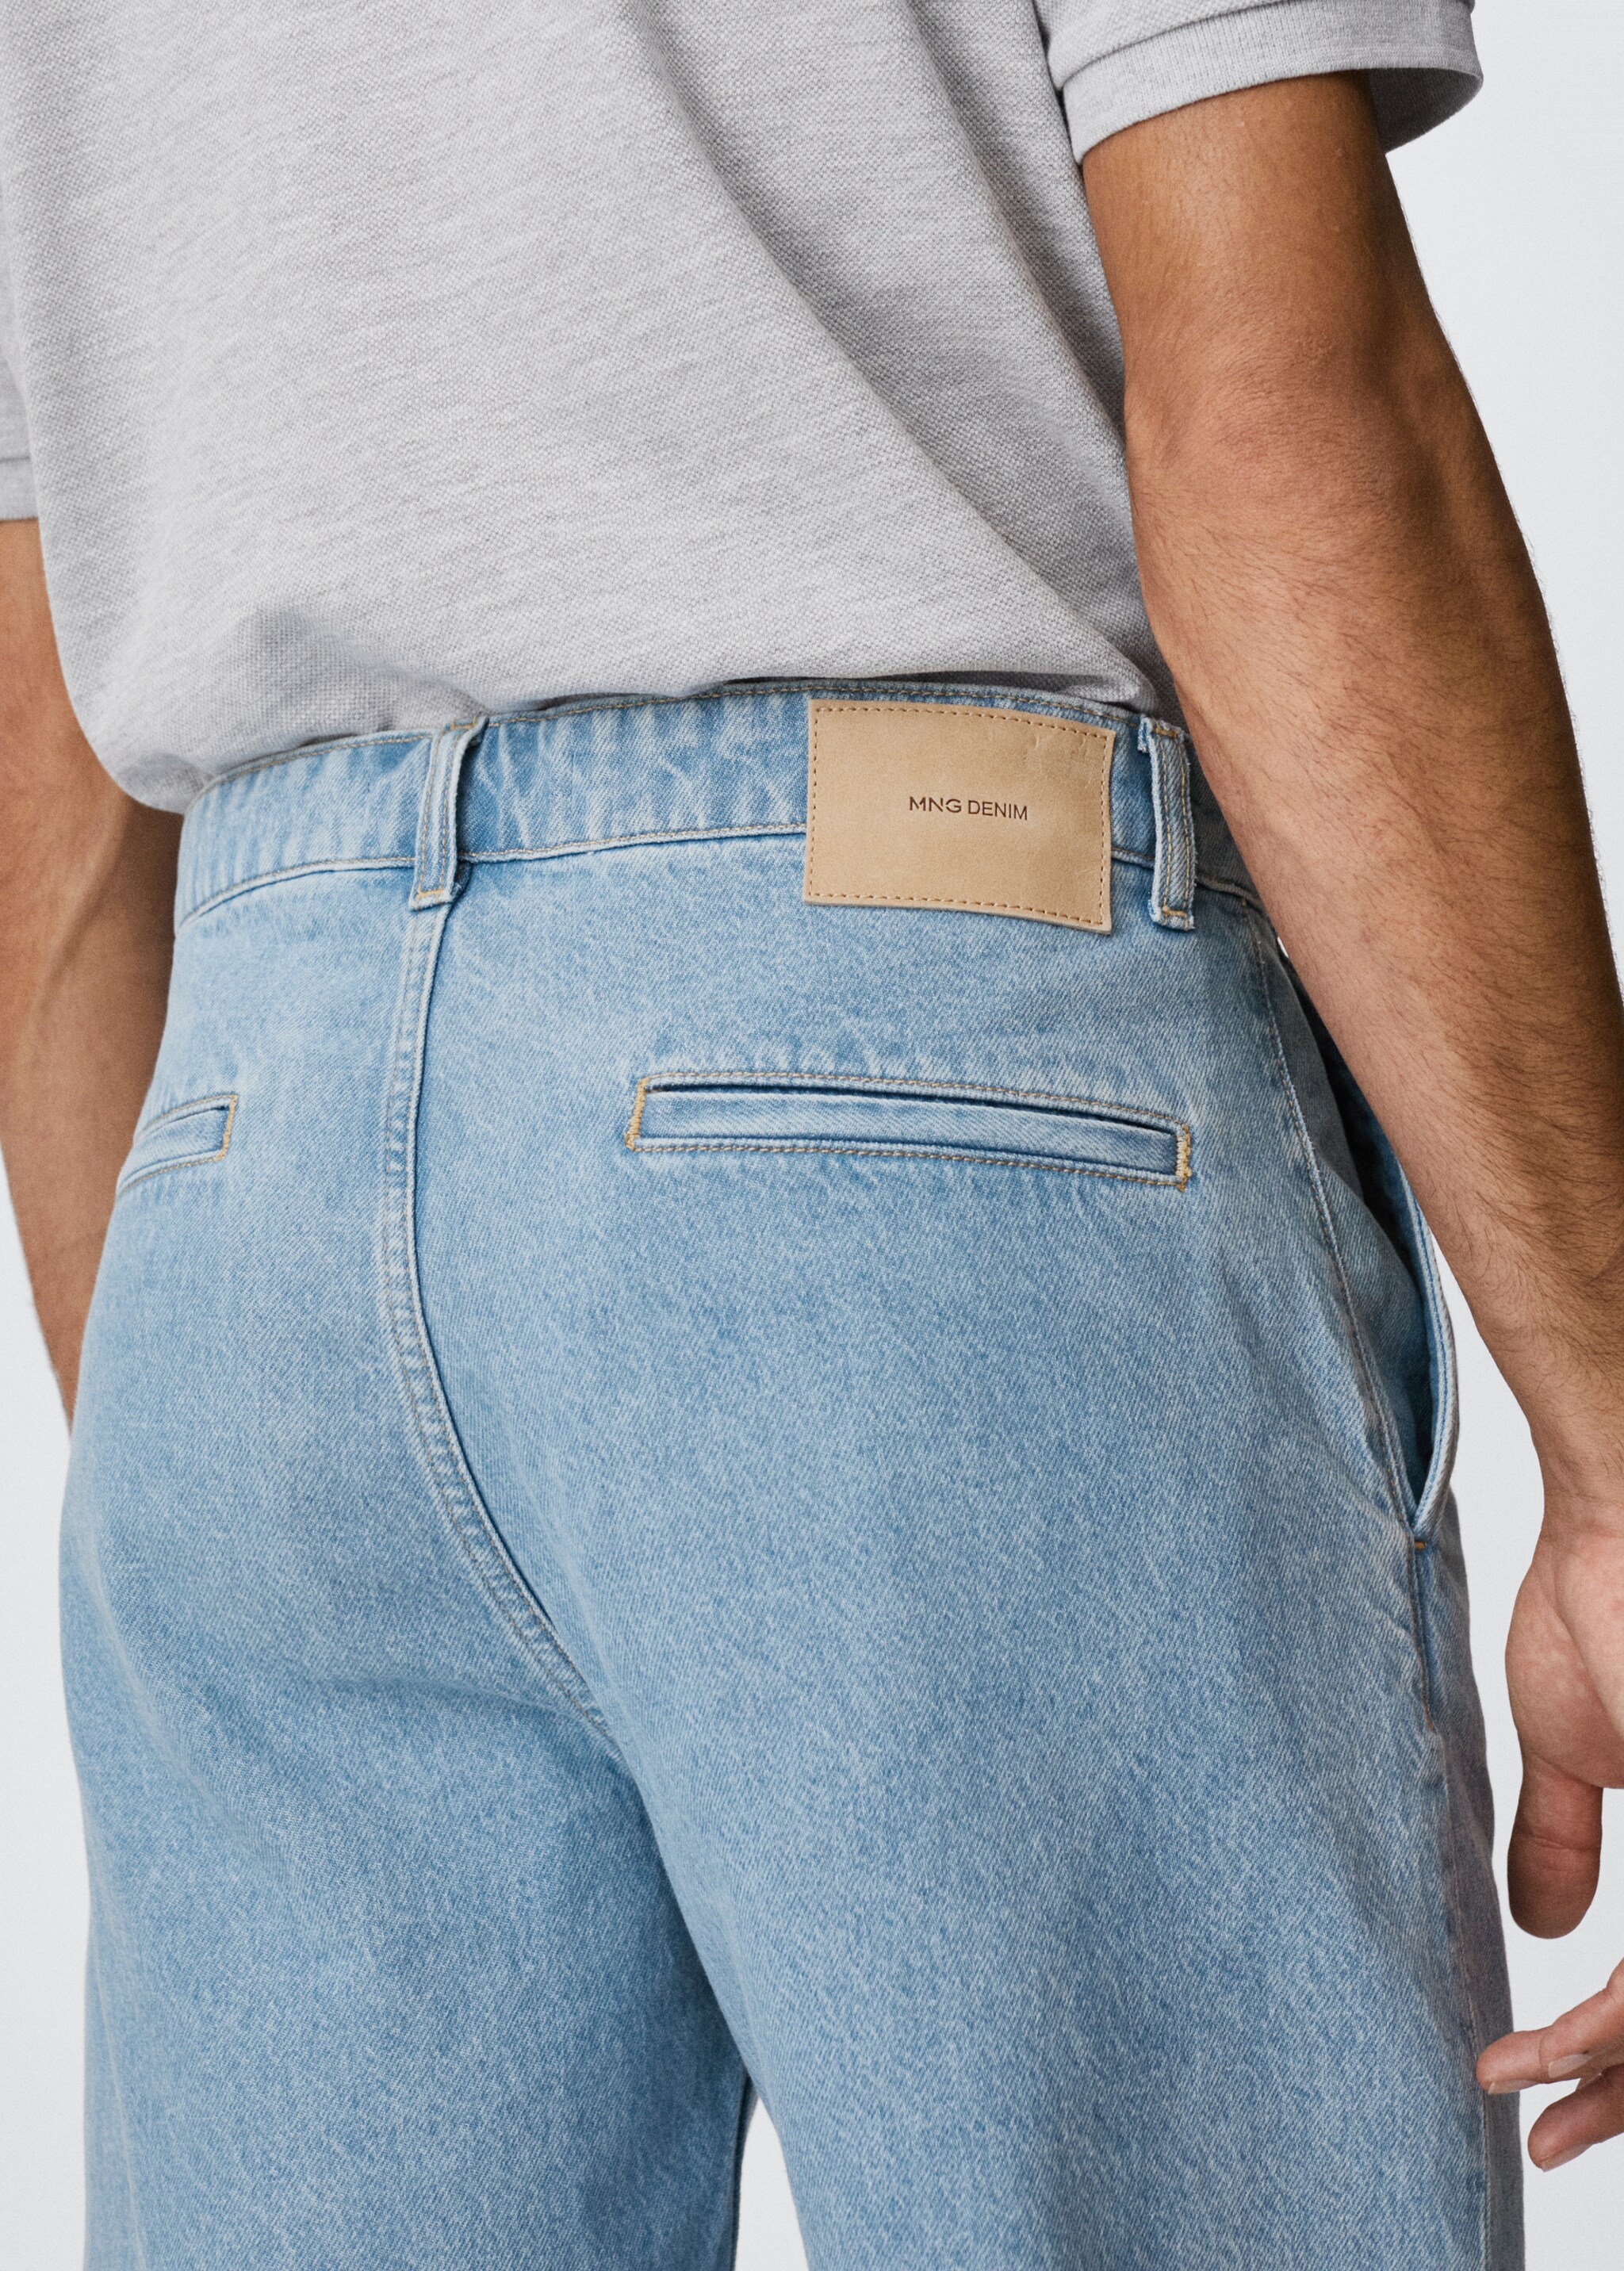 Jeans-Bermudashorts mit Bundfalten - Detail des Artikels 3